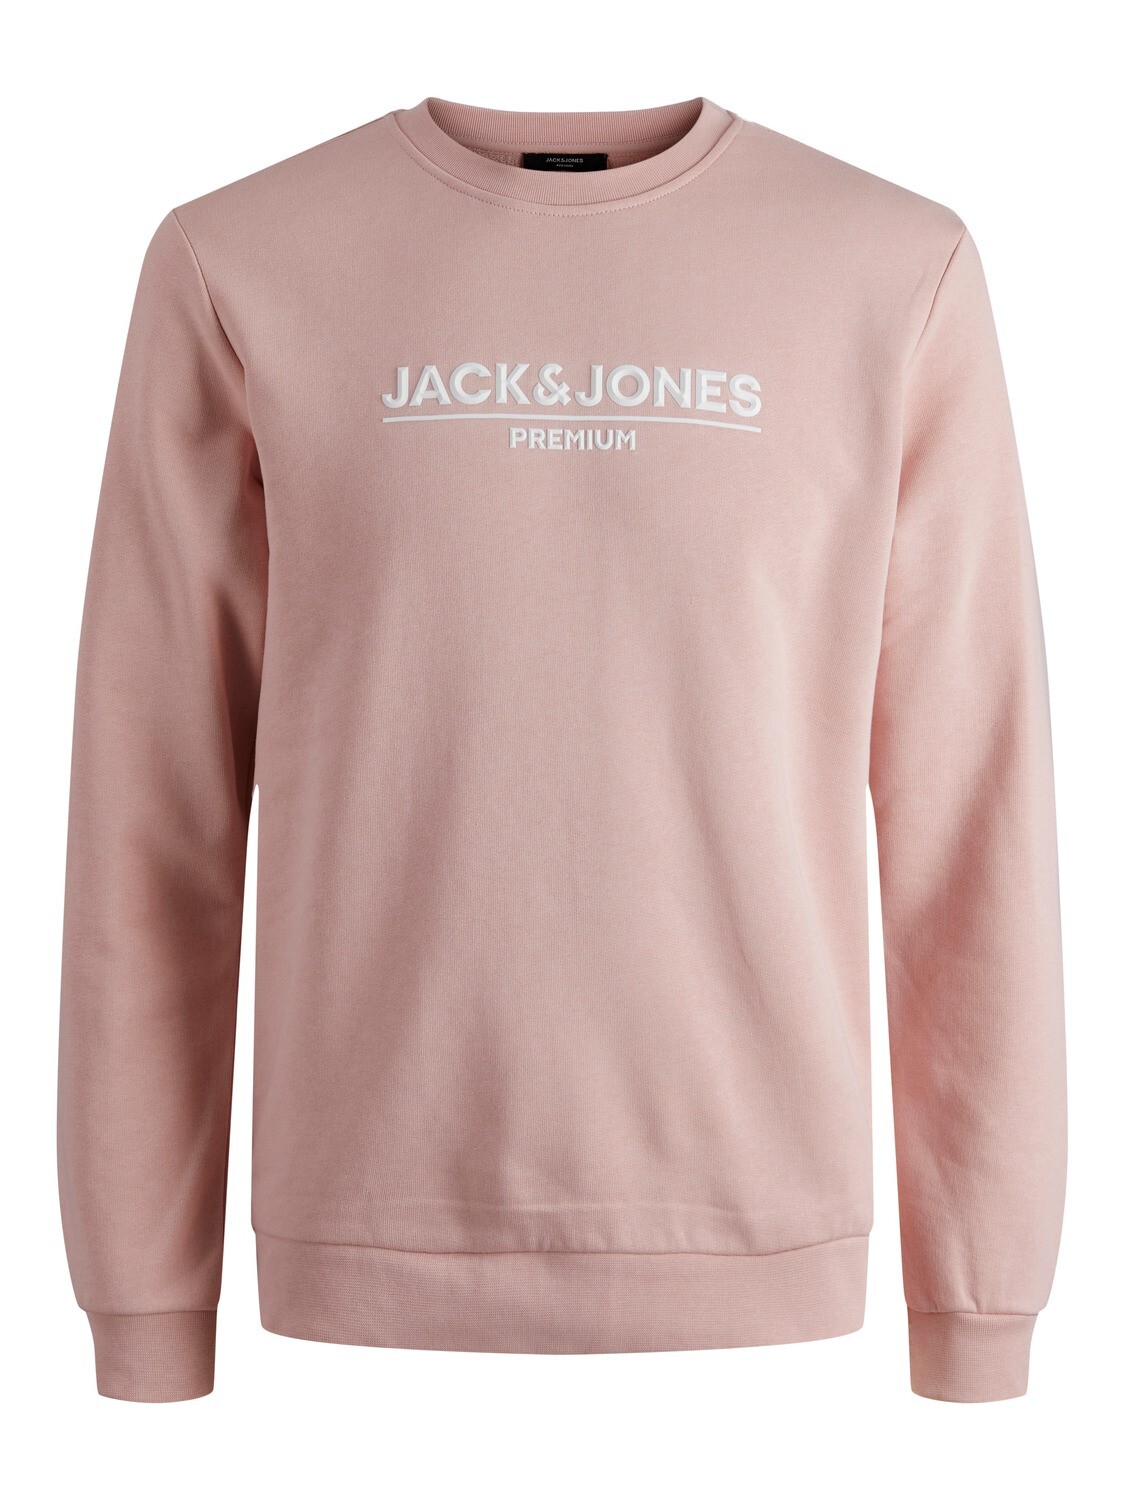 Jack & Jones crewneck sweat shirt pink